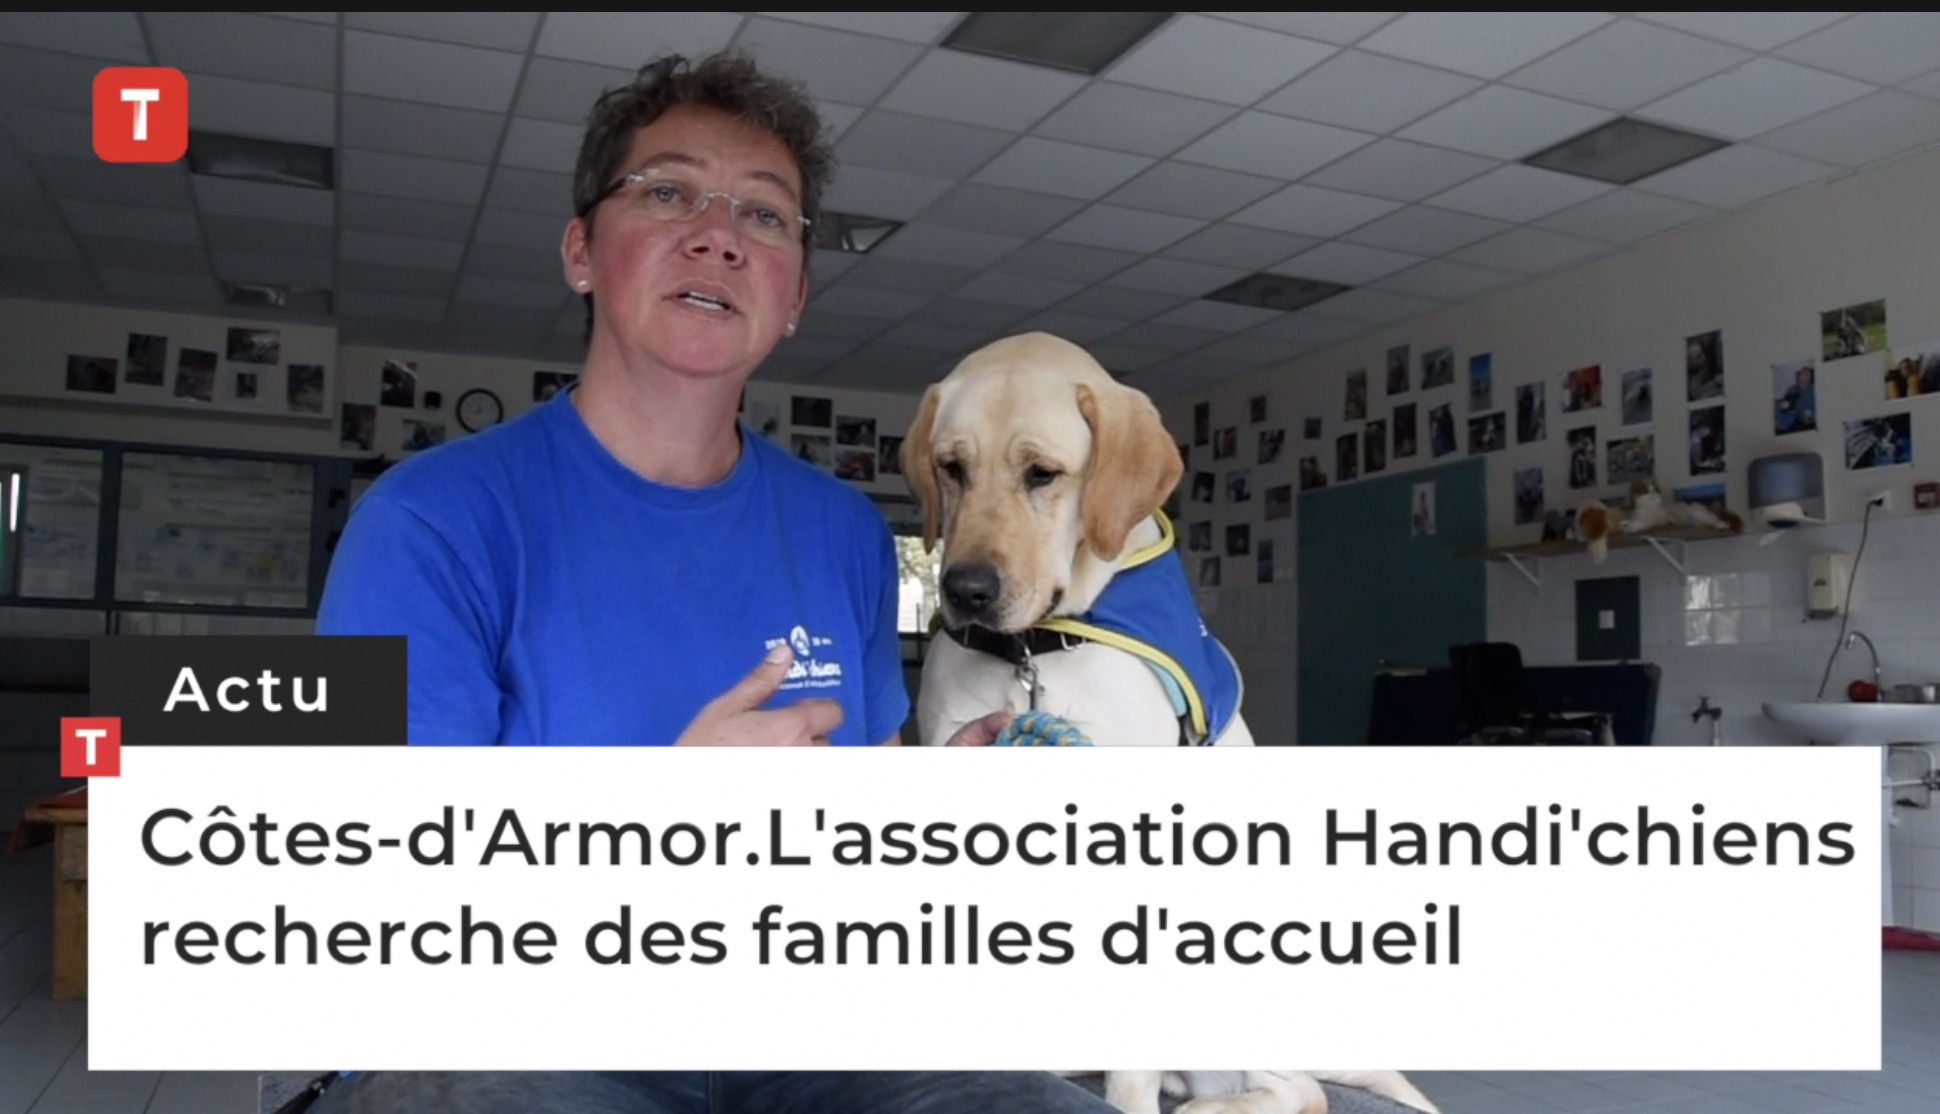 Côtes-d'Armor. L'association Handi'chiens recherche des familles d'accueil (Le Télégramme)